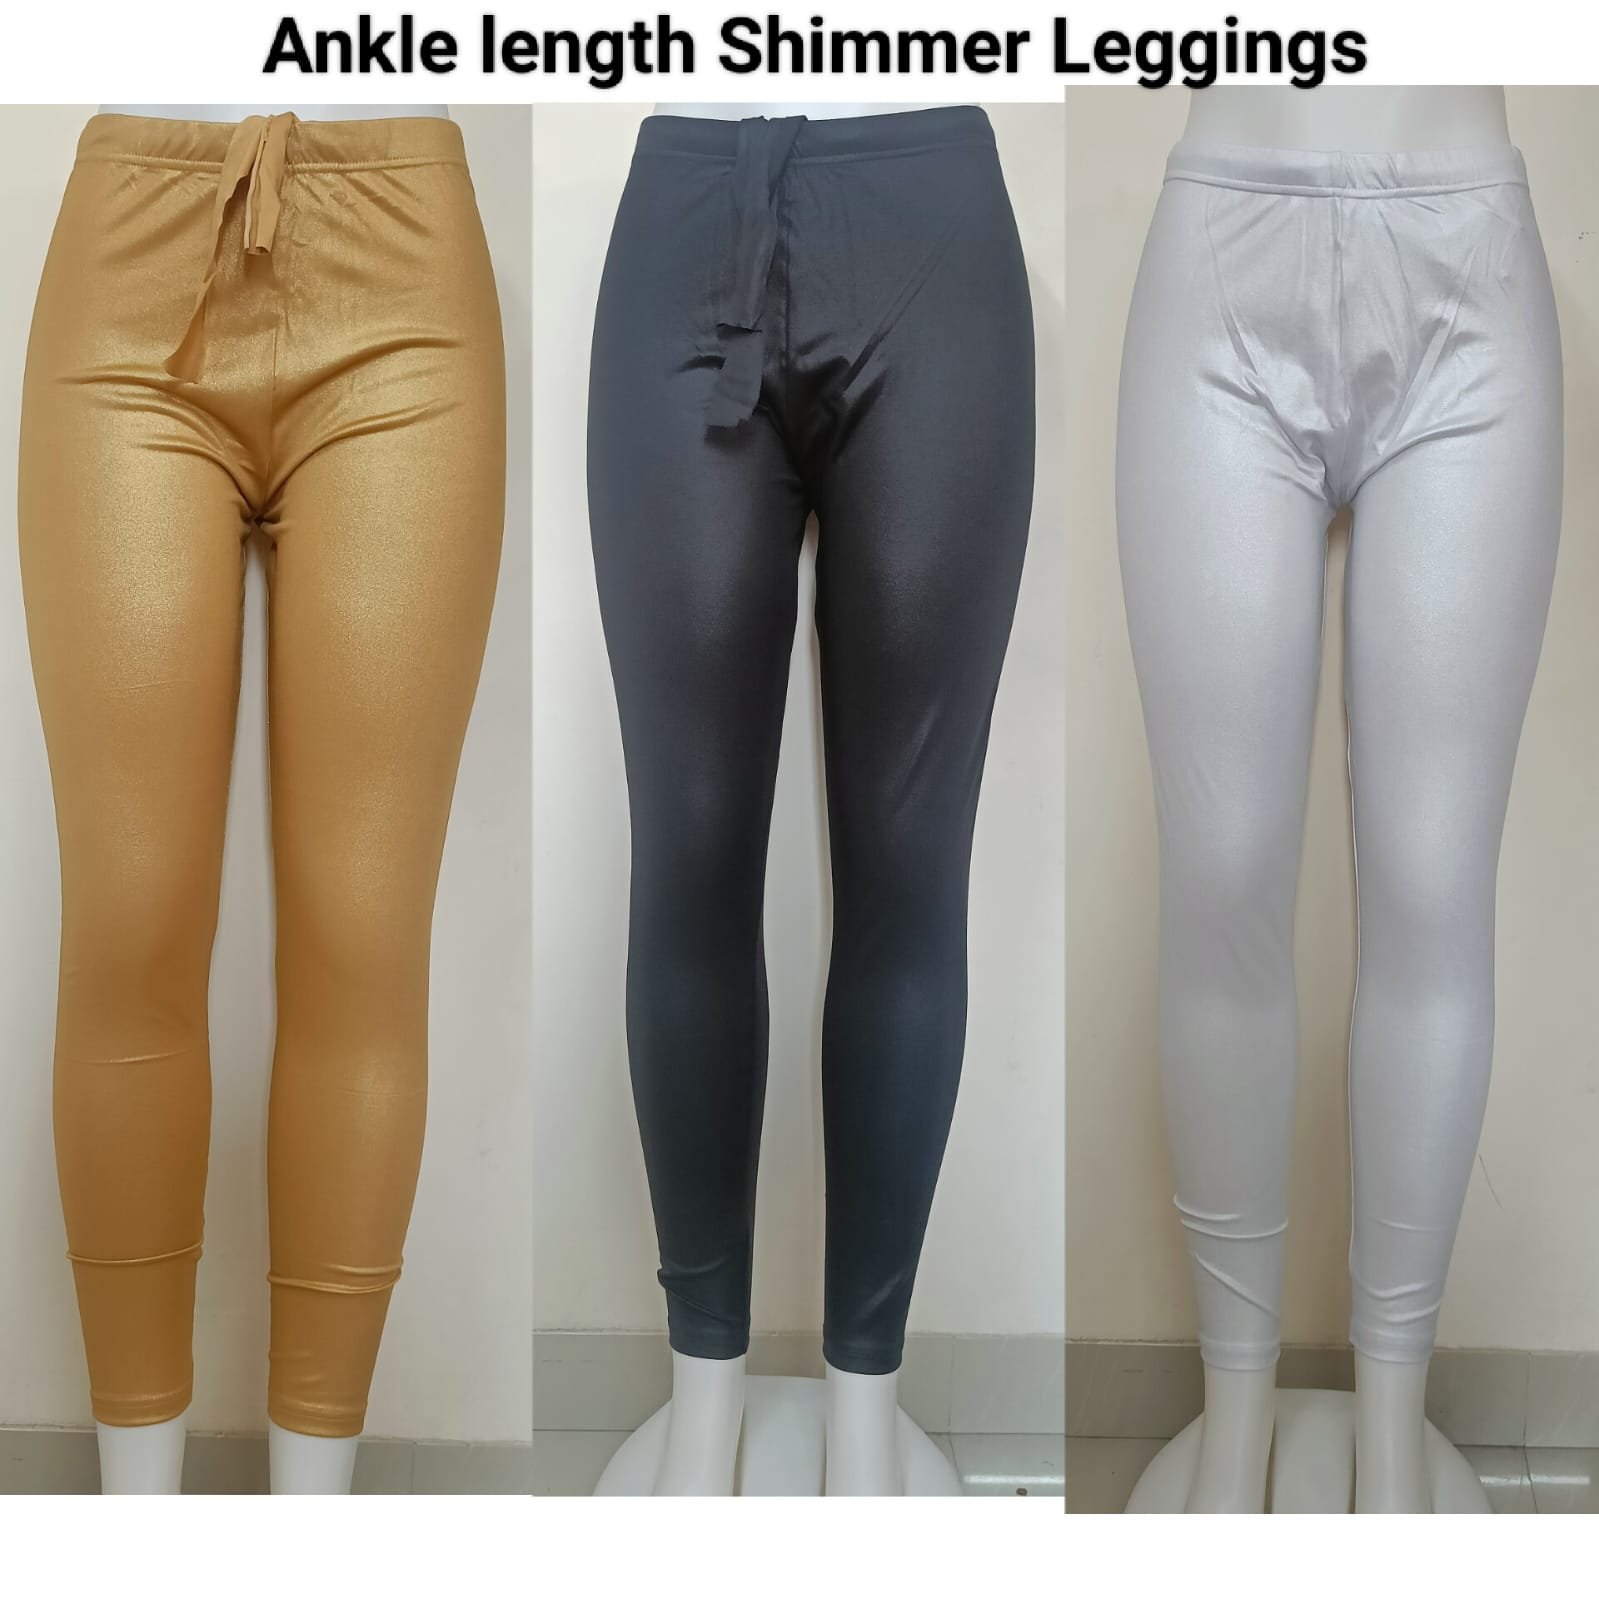 Ankle Length Shimmer Leggings